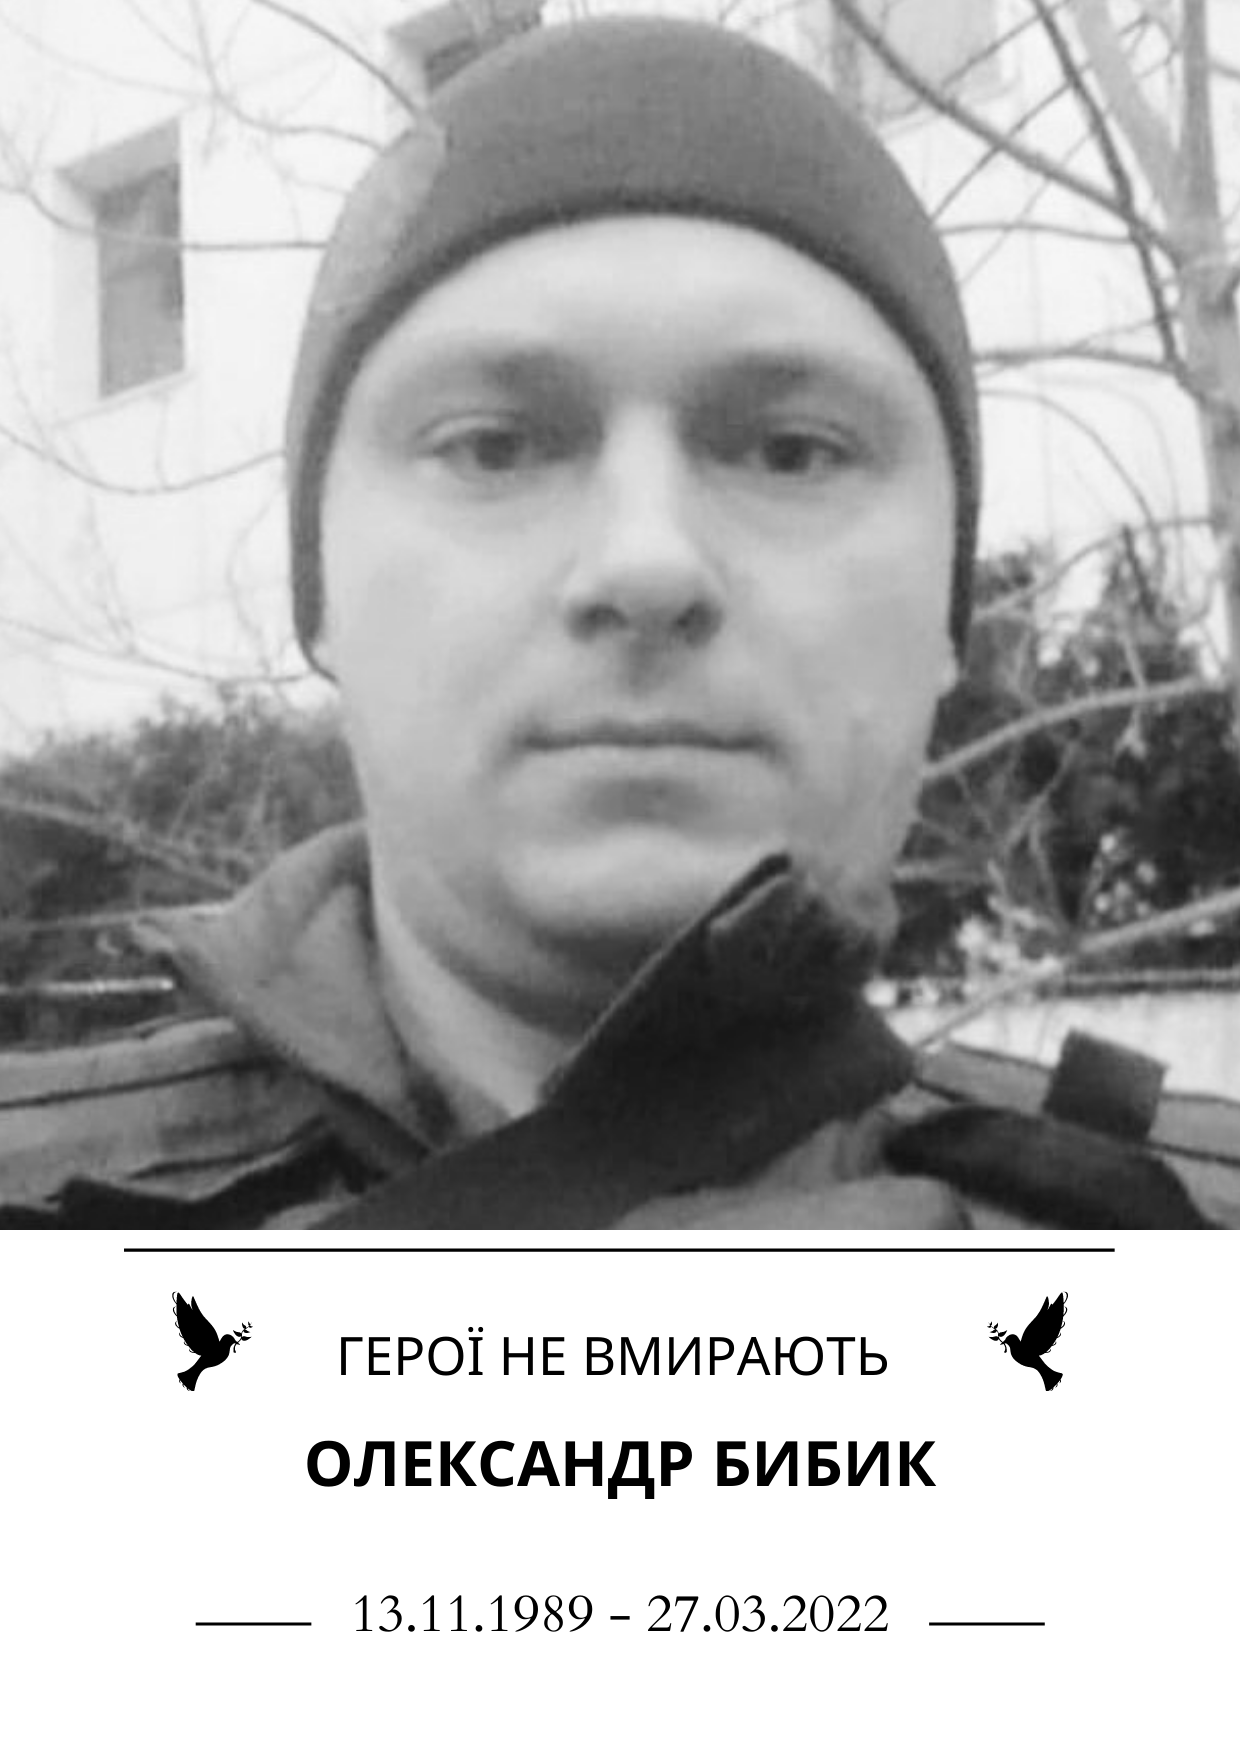 Герої не вмирають Олександр Бибик Роки життя 13 листопада 1989 року - 27 березня 2022 року